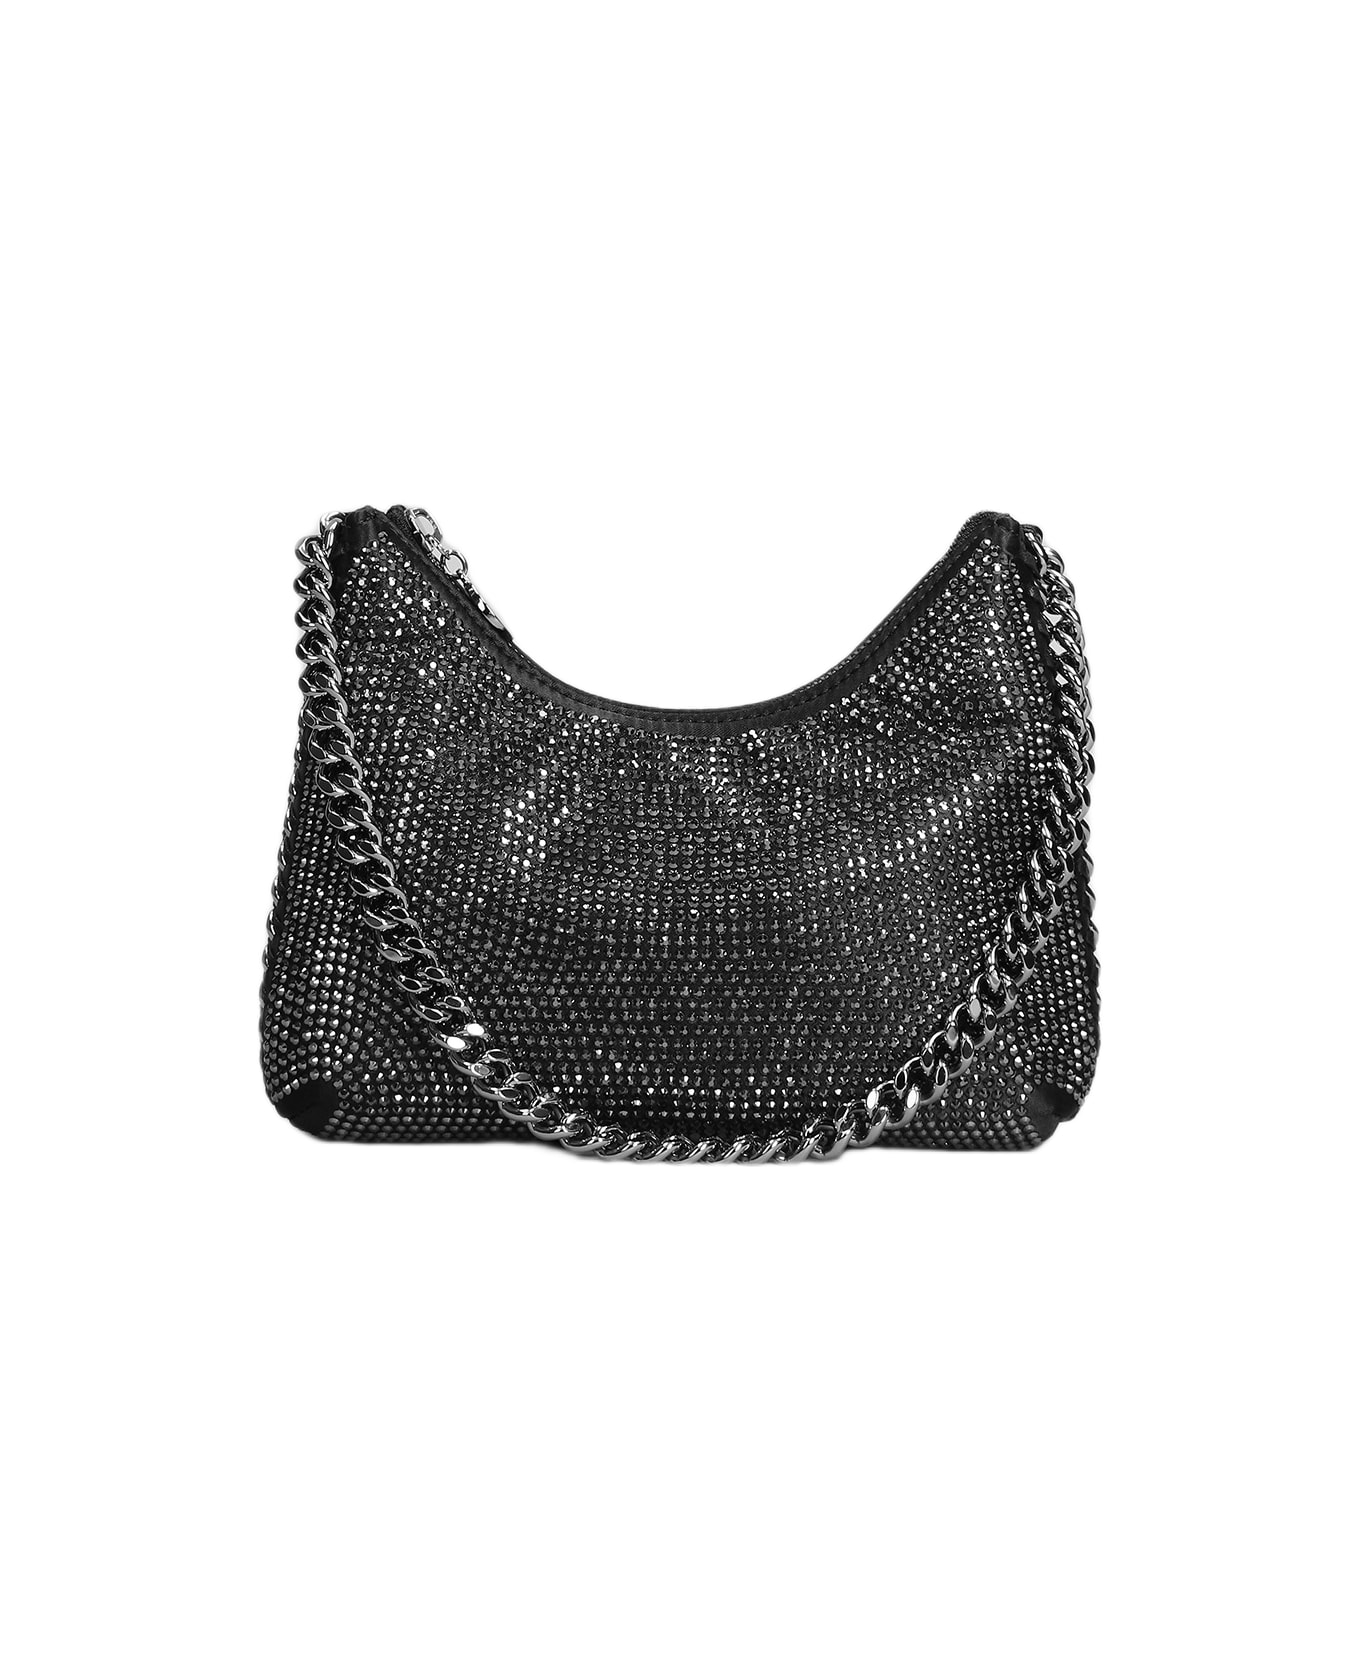 Stella McCartney Falabella Shoulder Bag In Black Polyester - black